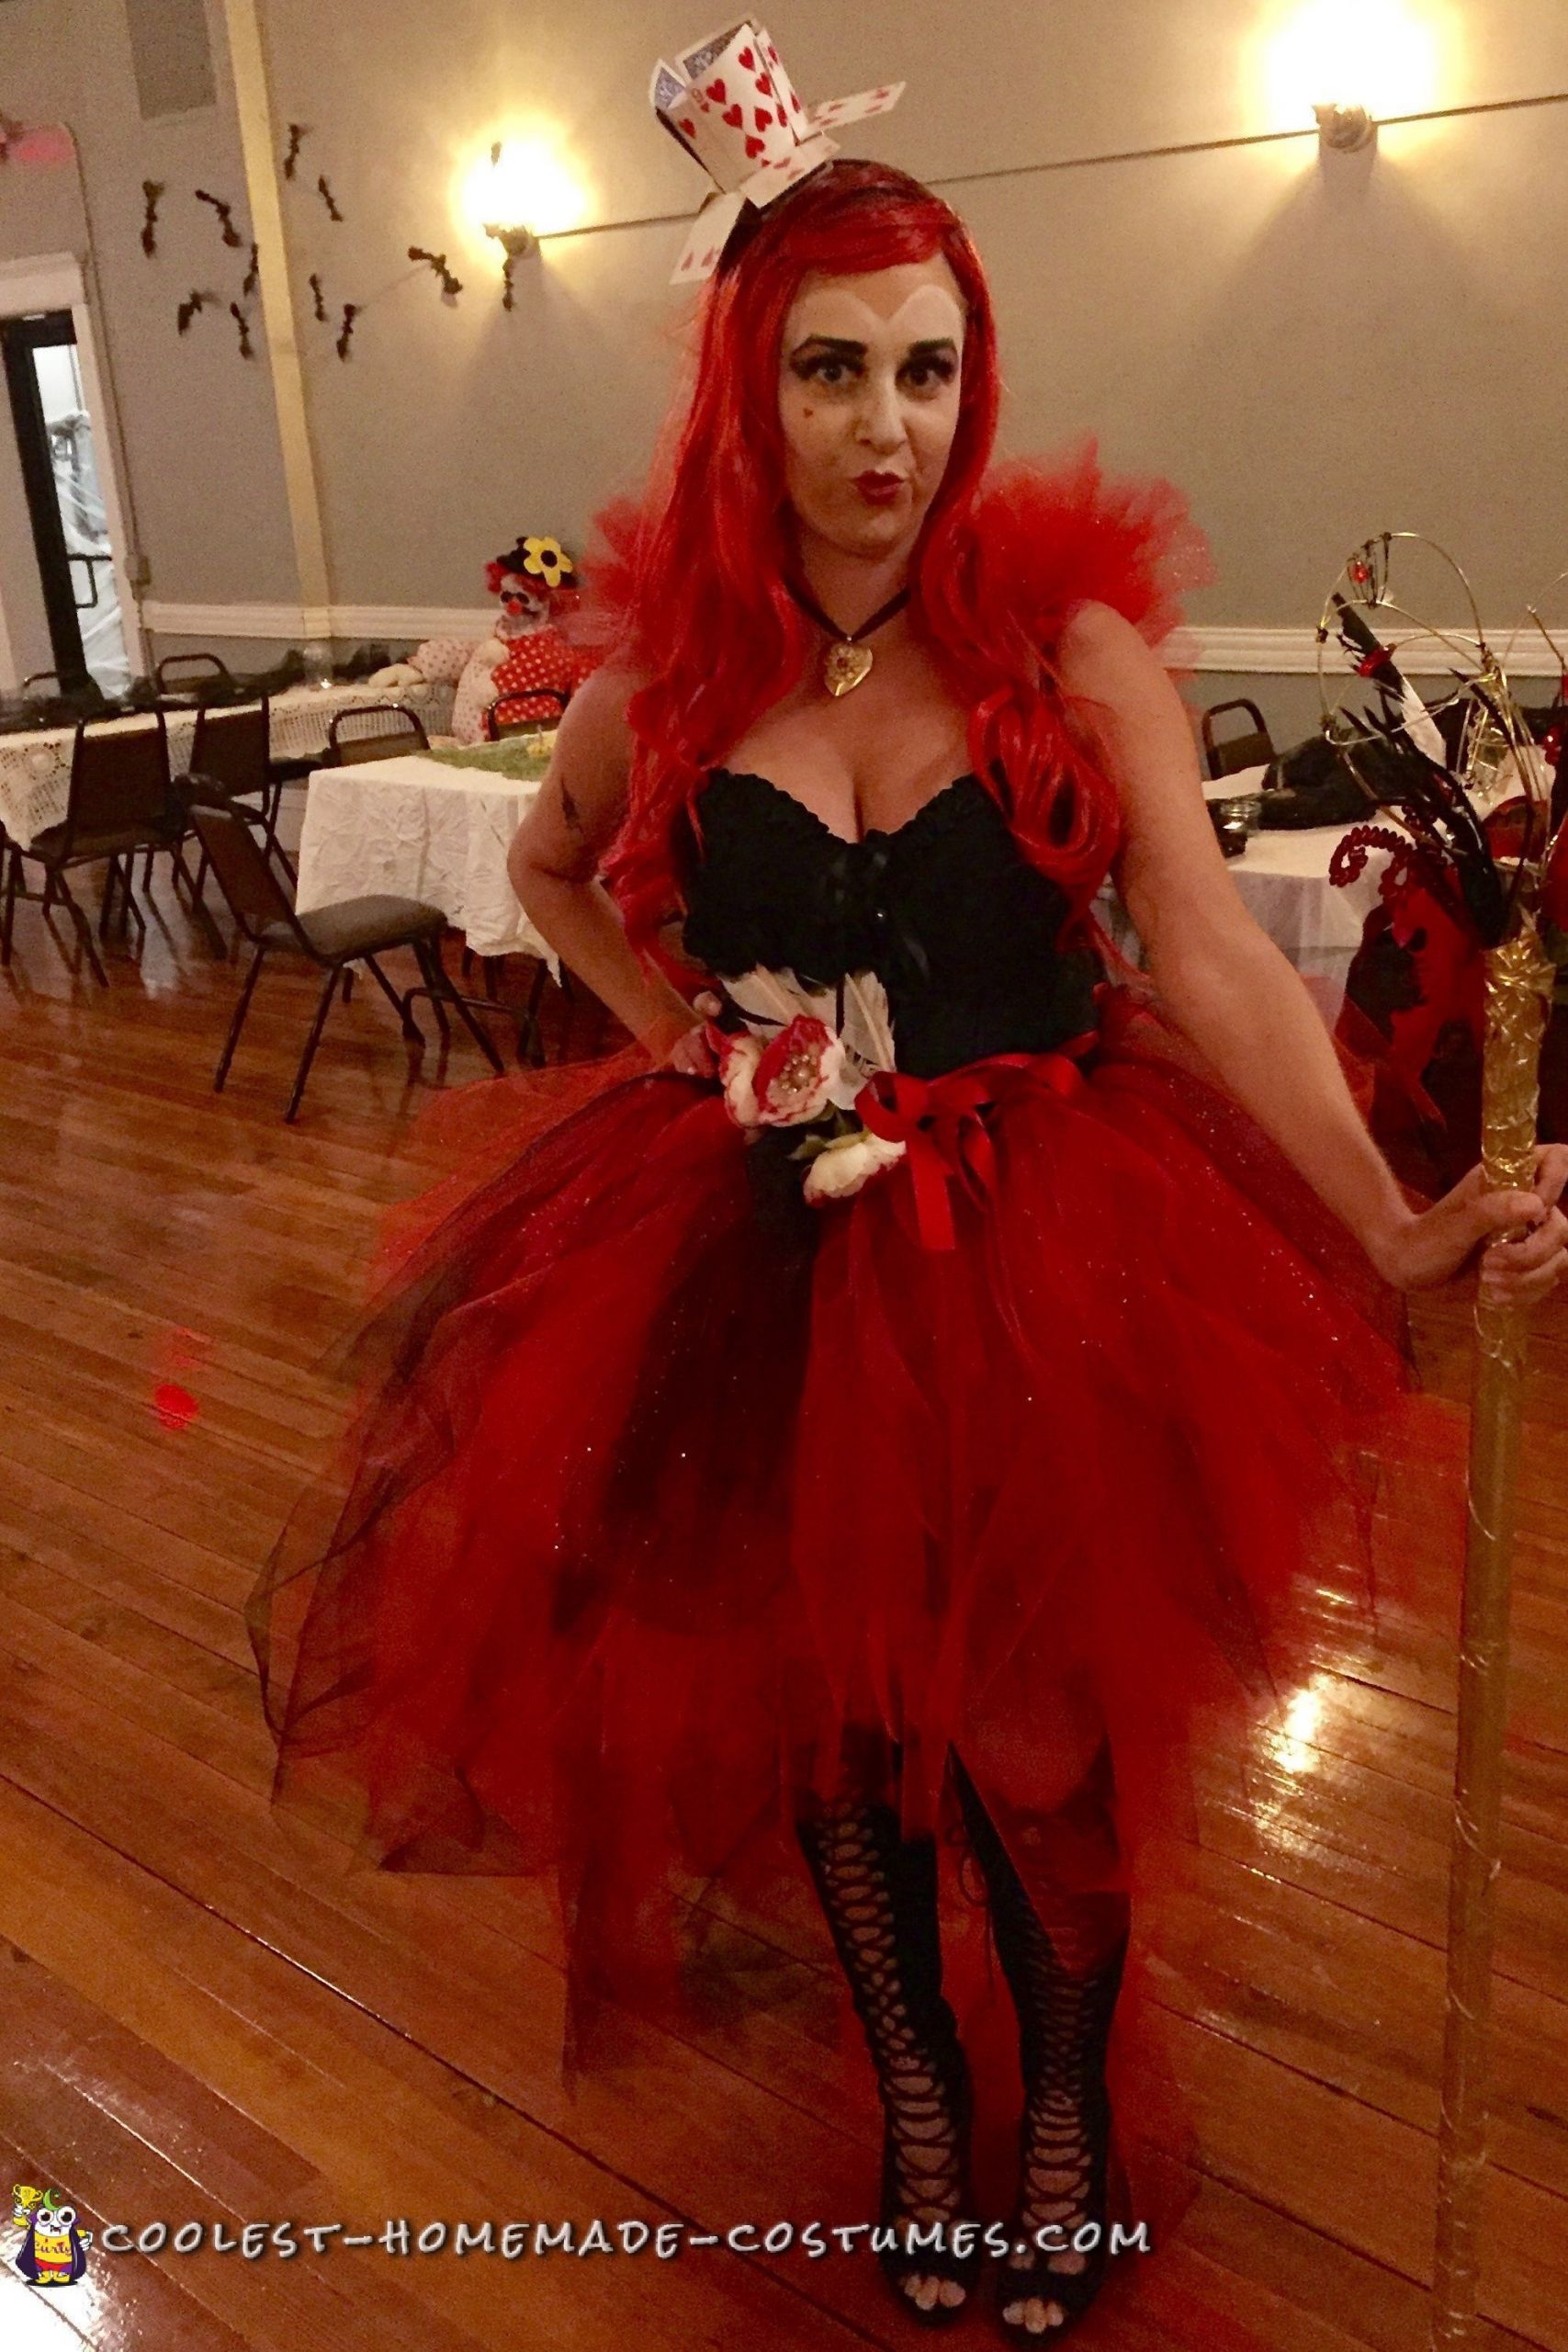 DIY Queen Of Hearts Costume
 Fabulous DIY Queen of Hearts Costume for Halloween